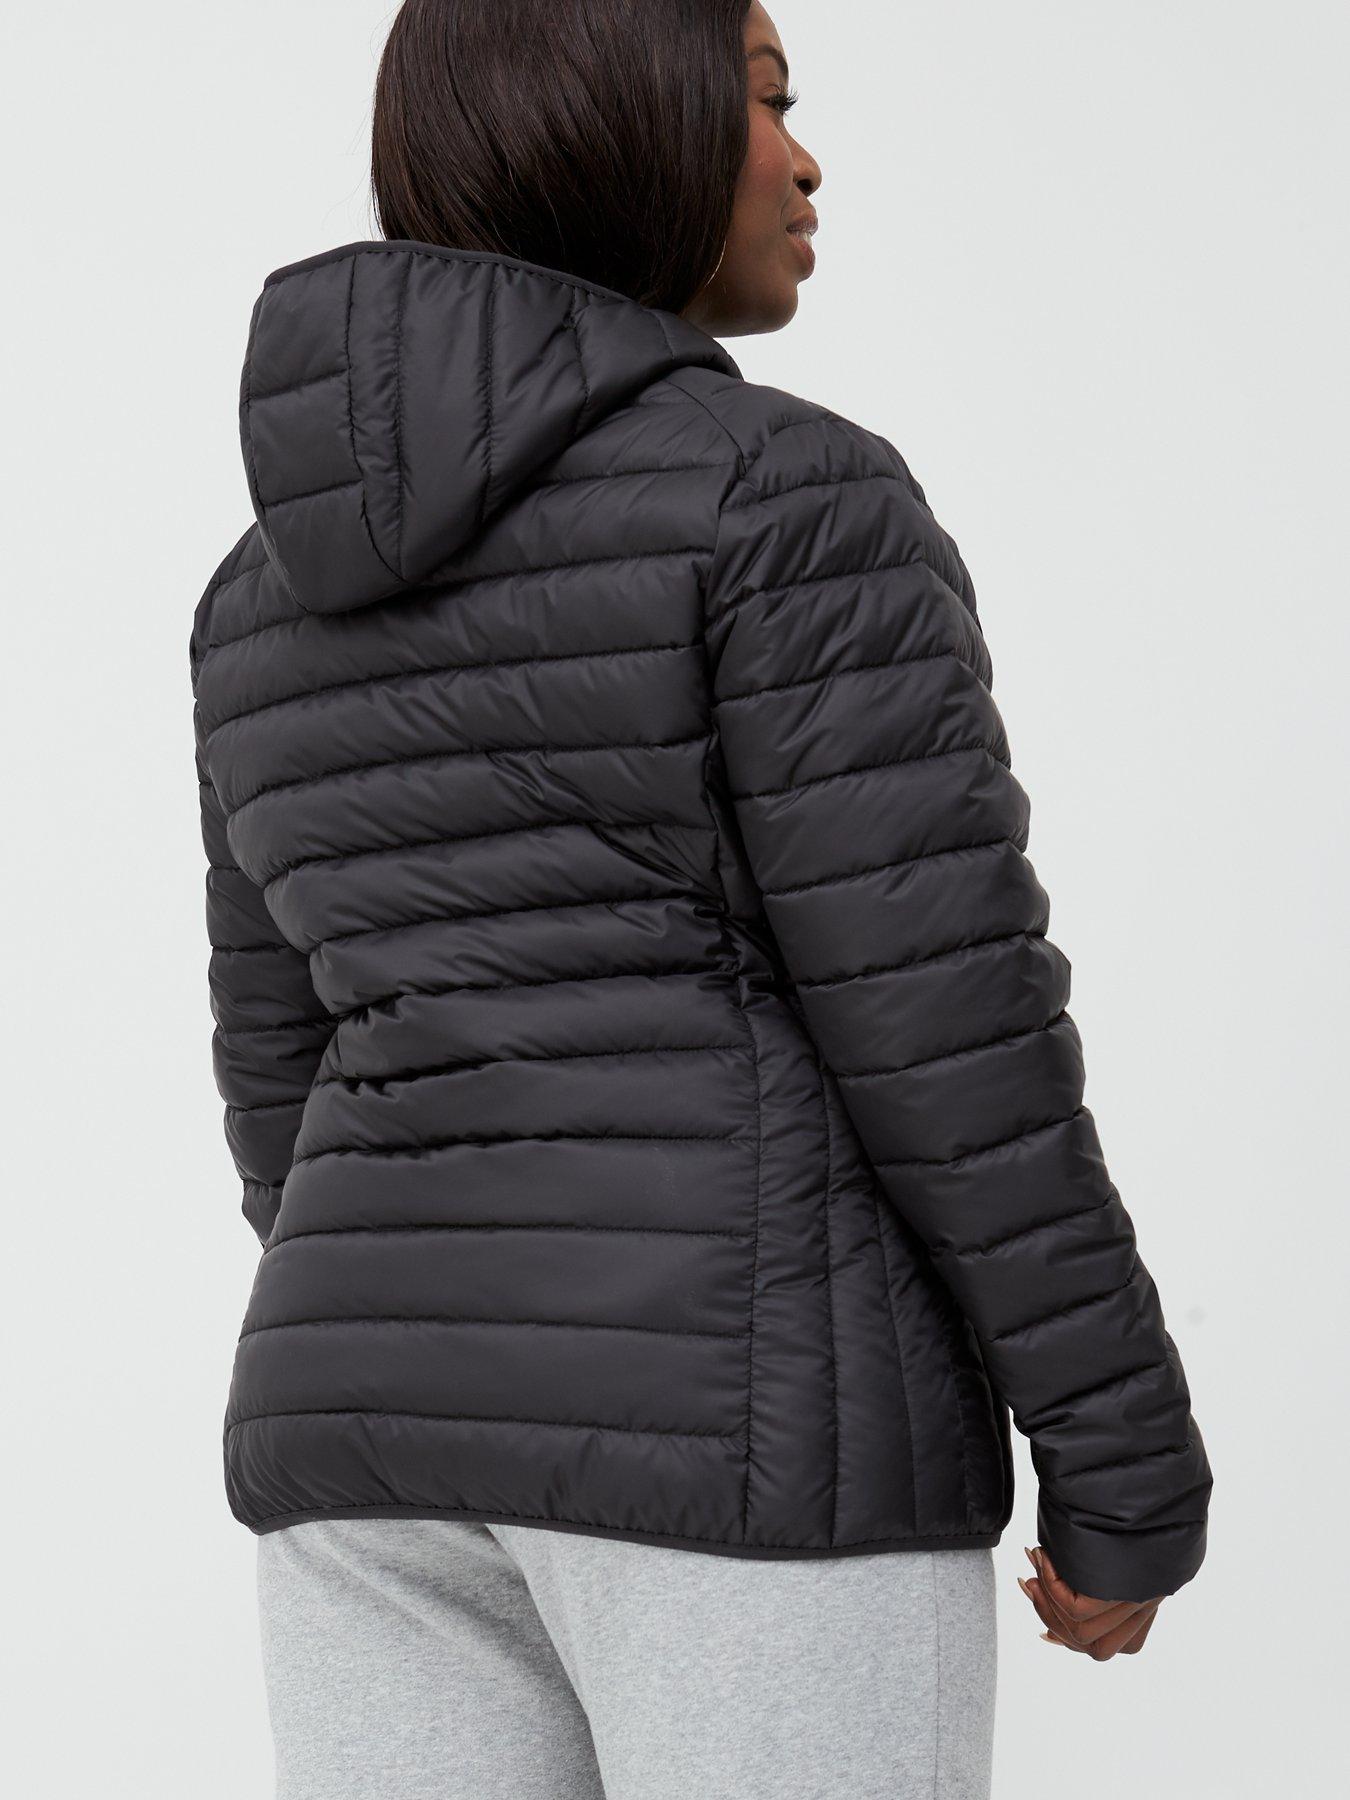 lompard padded jacket black